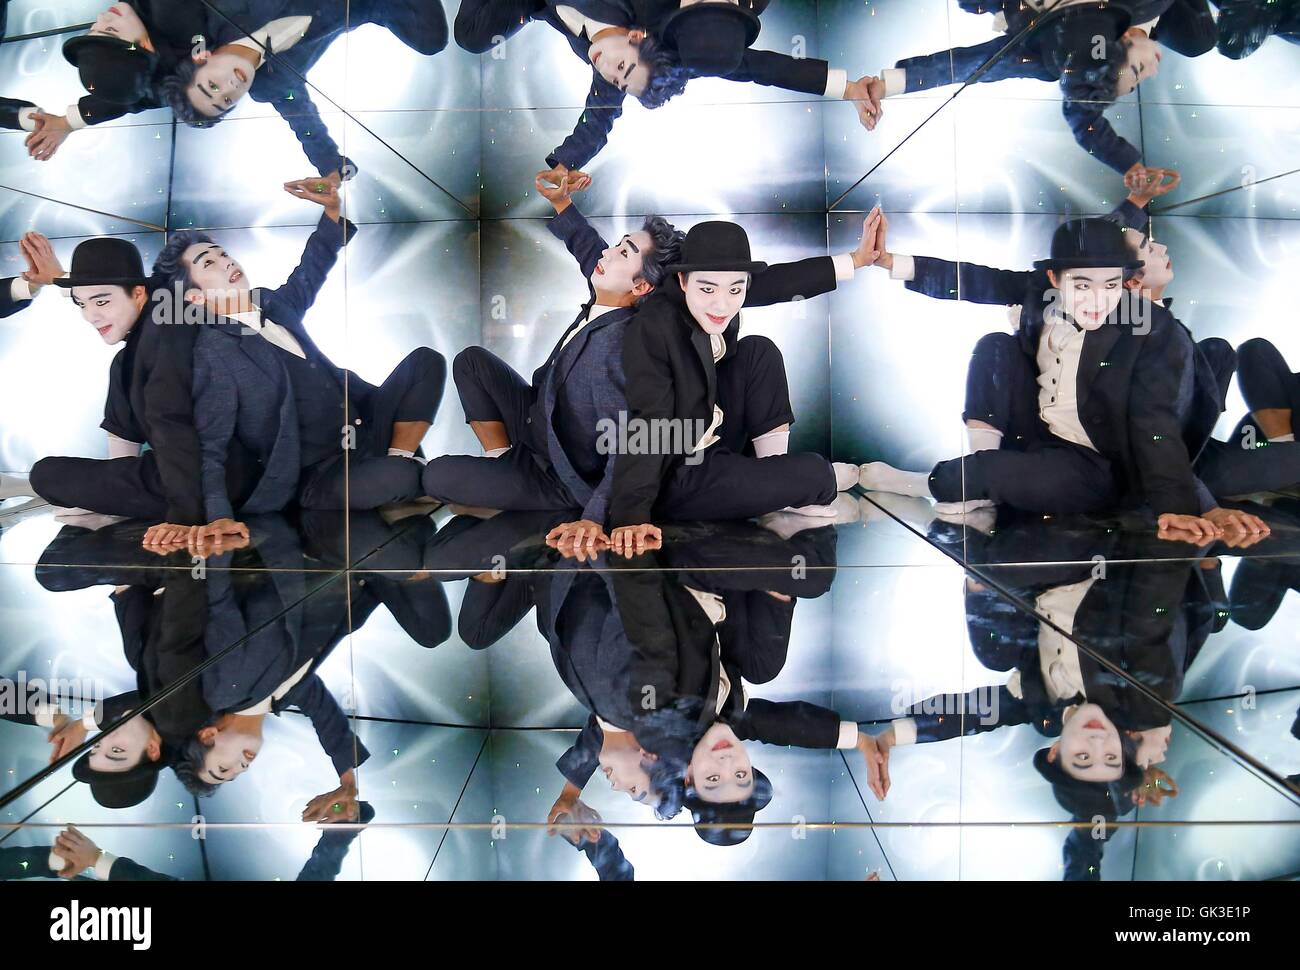 (links nach rechts) Erkunden innen ein riesiges Kaleidoskop an Edinburghs Camera Obscura und Welt der Illusionen während des Edinburgh Festivals, CS Choi und Mun Jeong-Seok, zwei der Chaplinesken Magier aus der Betrüger. Stockfoto